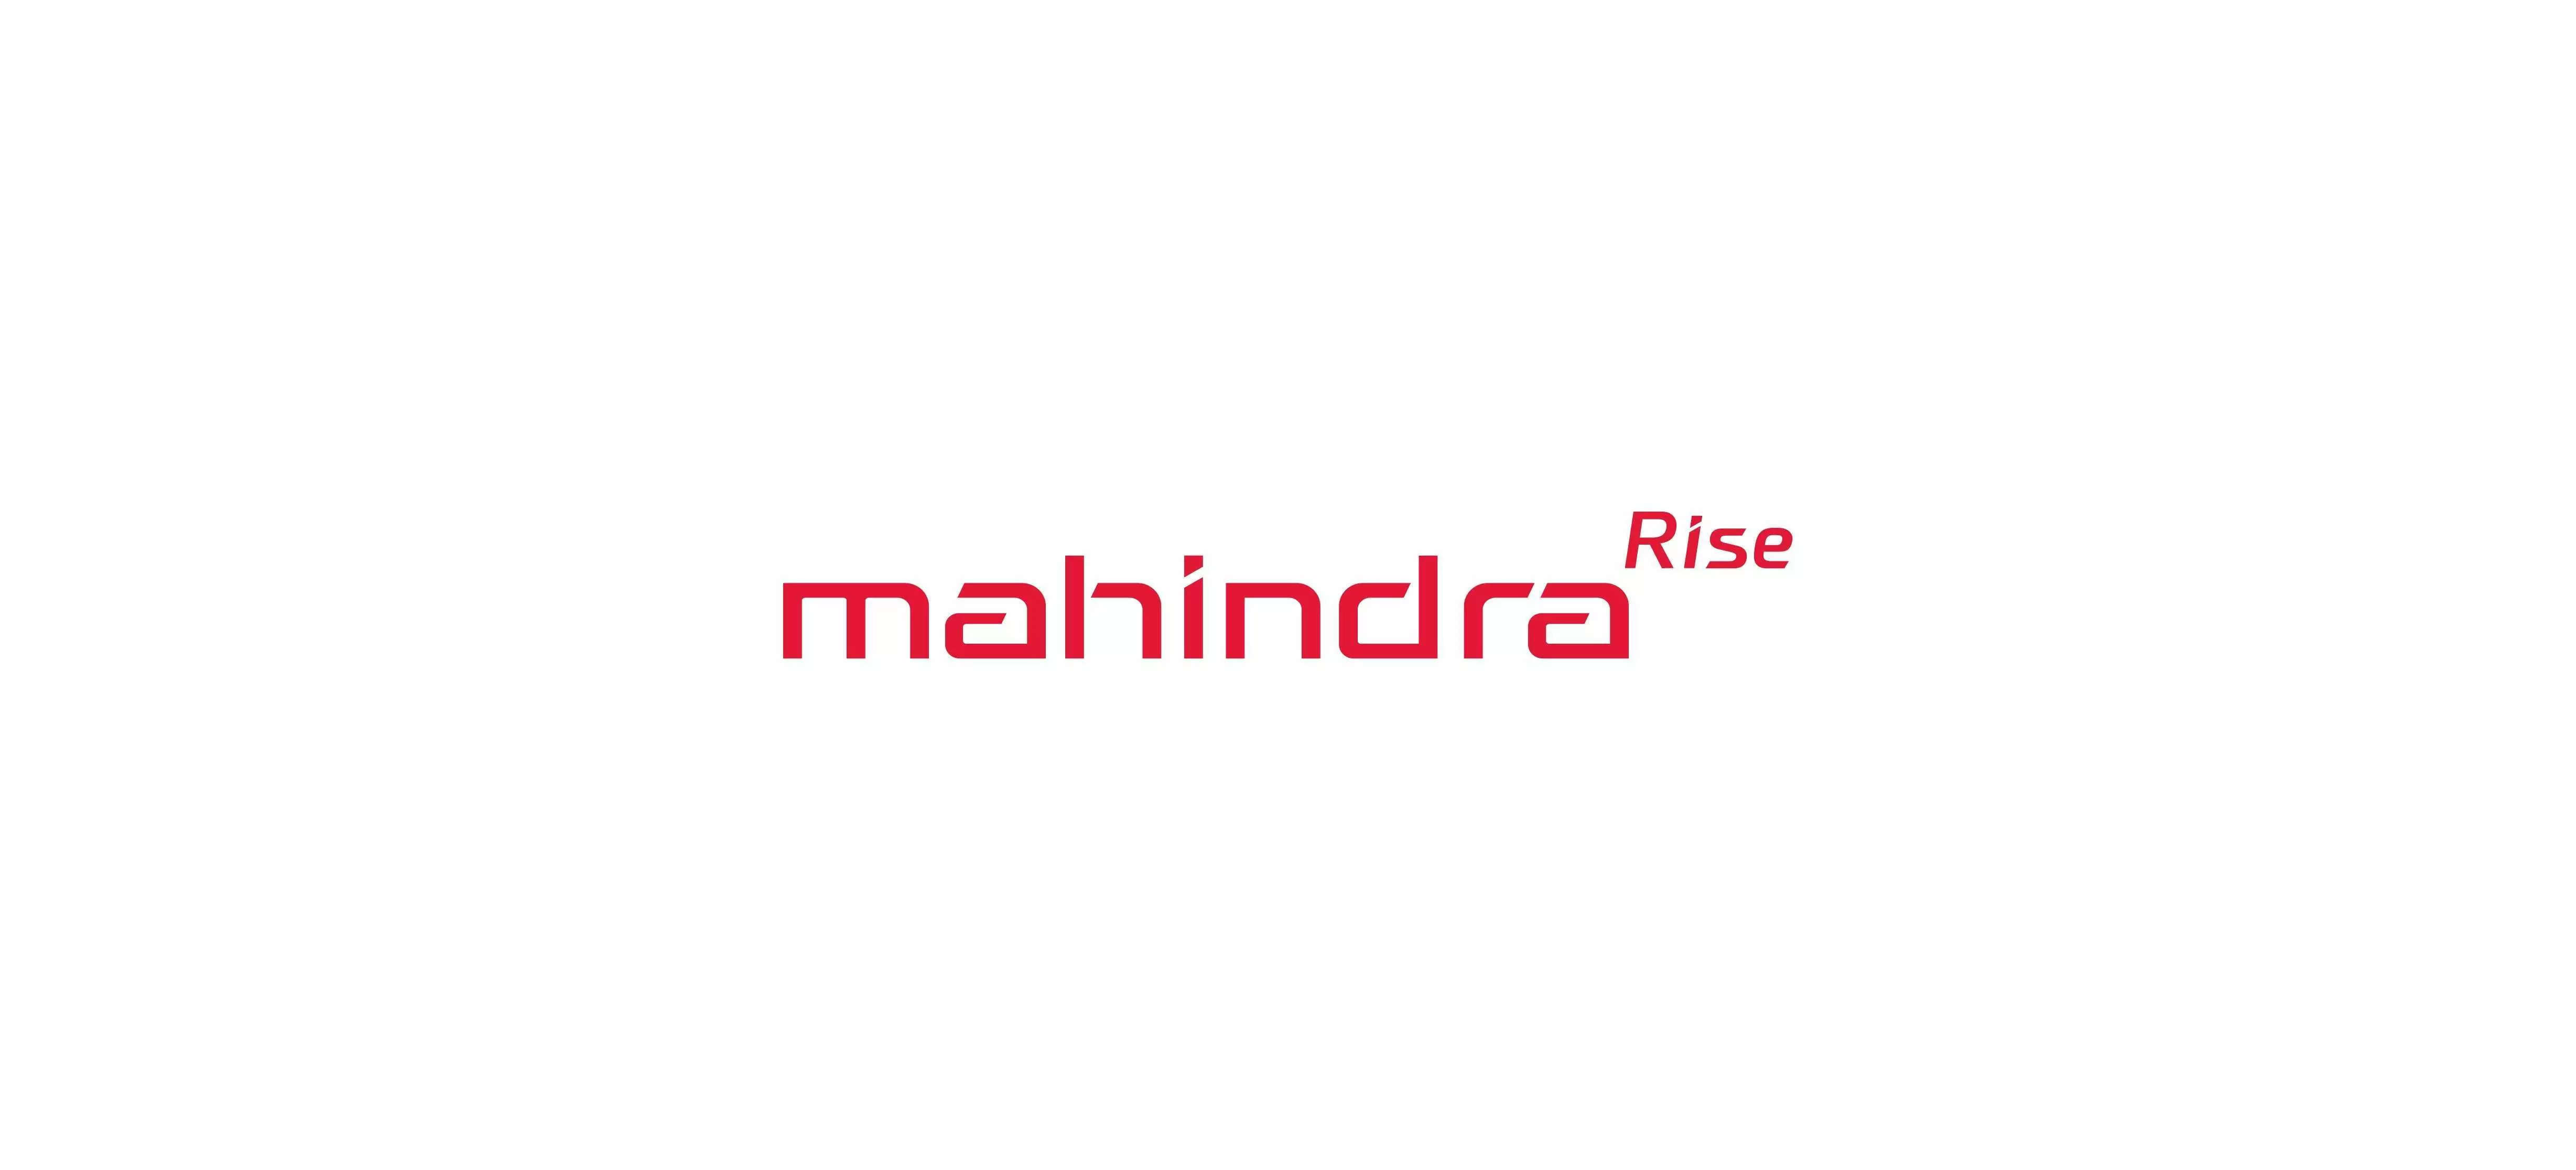 Mahindra XUV700 To Feature Company's new Logo! - YouTube